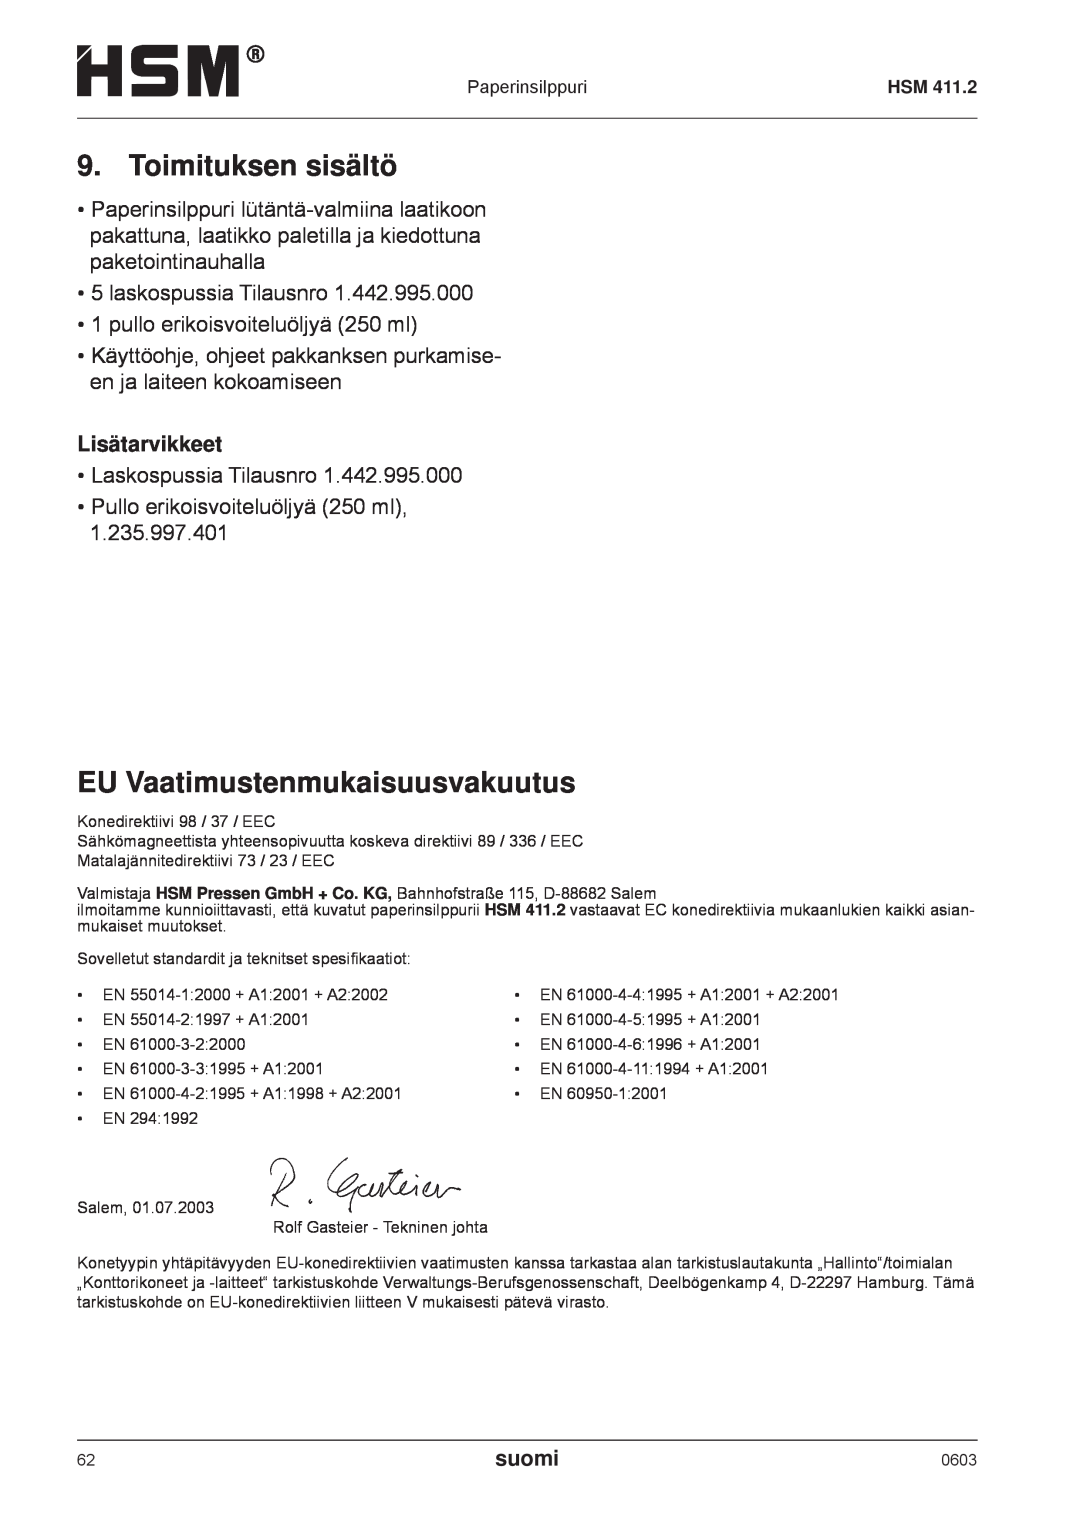 HSM HSM 411.2 operating instructions Toimituksen sisältö, EU Vaatimustenmukaisuusvakuutus, Lisätarvikkeet, suomi 